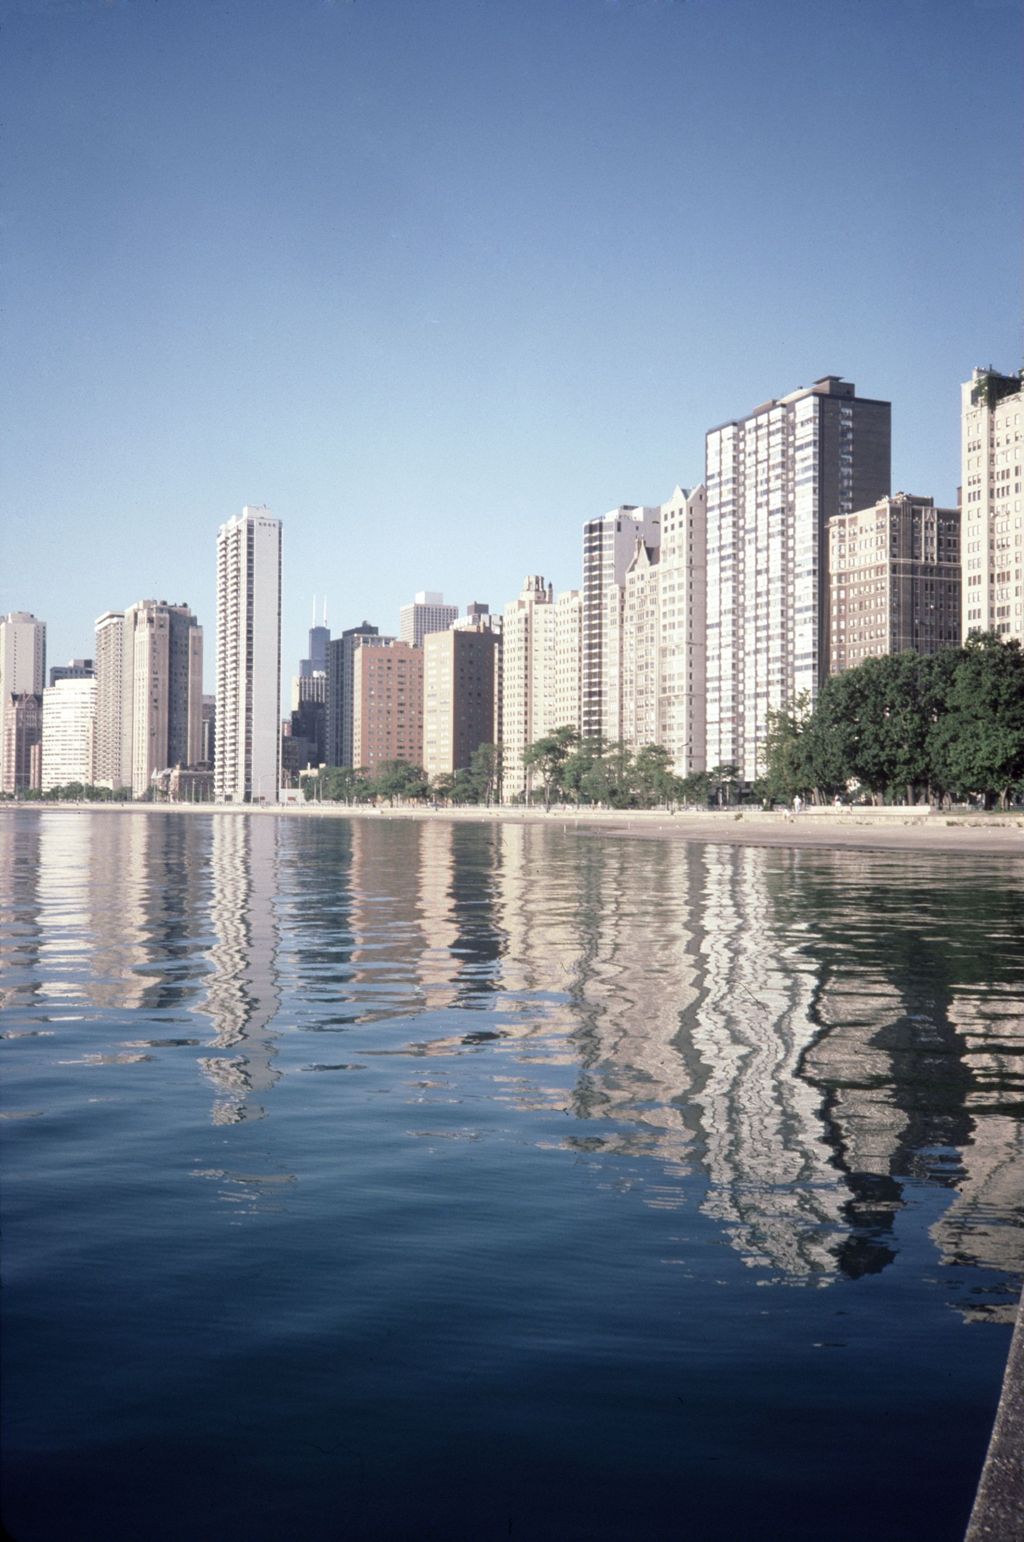 High-rise apartments along Lake Michigan